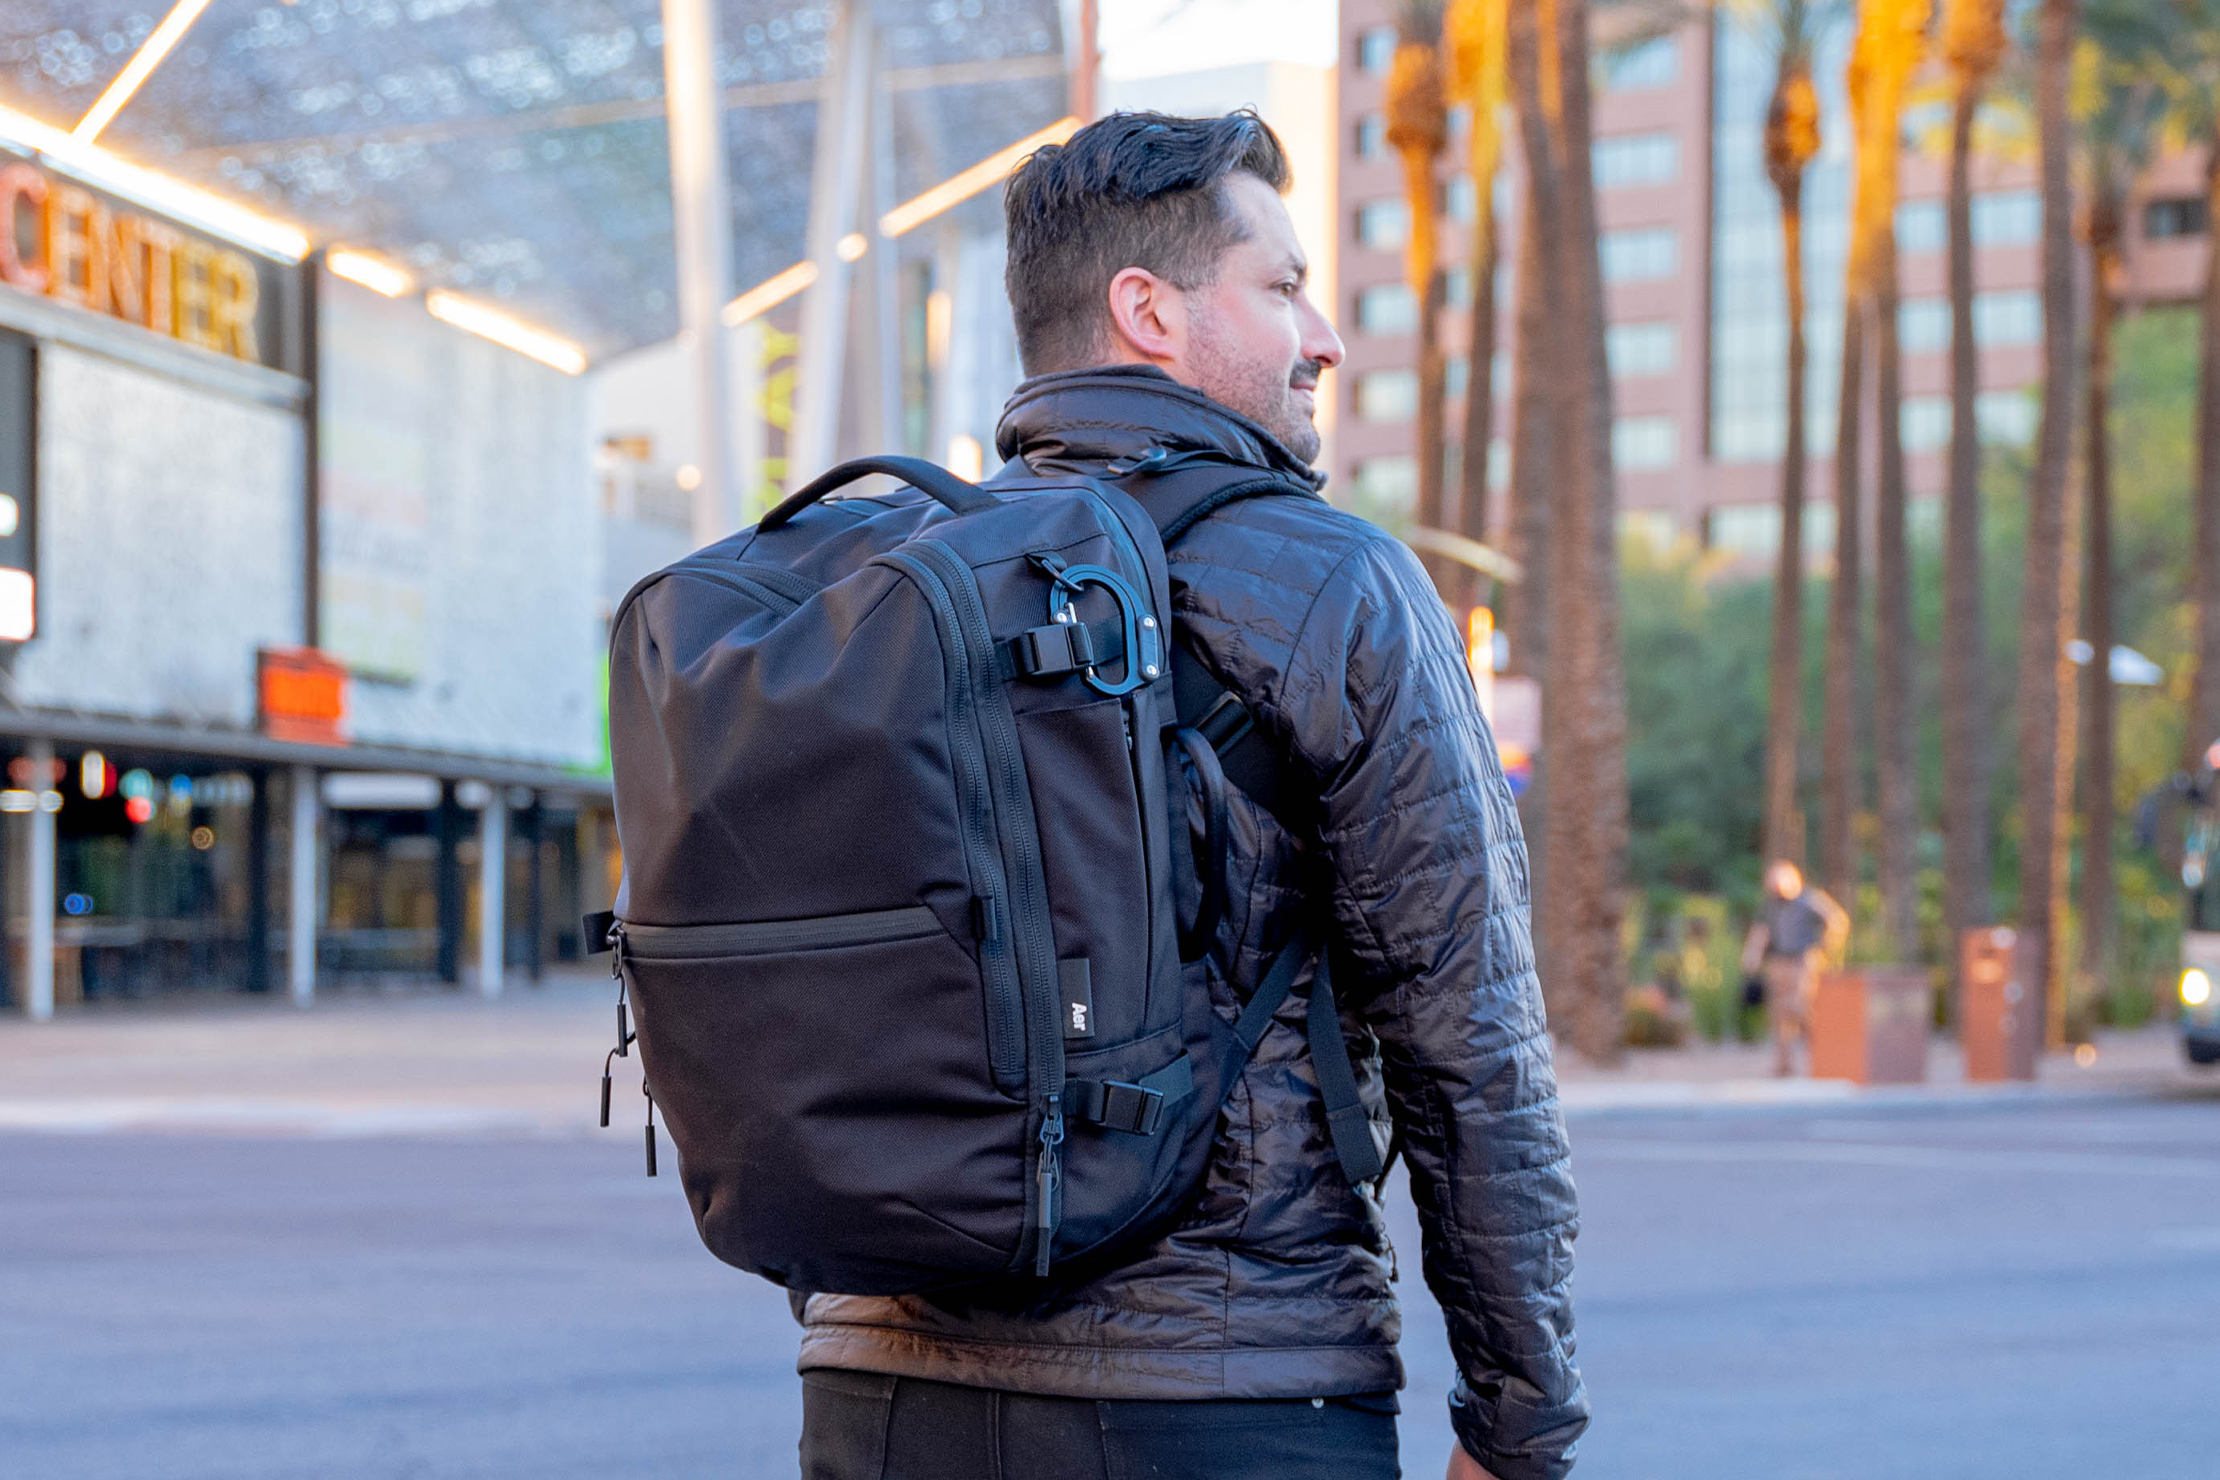 best travel backpack designer